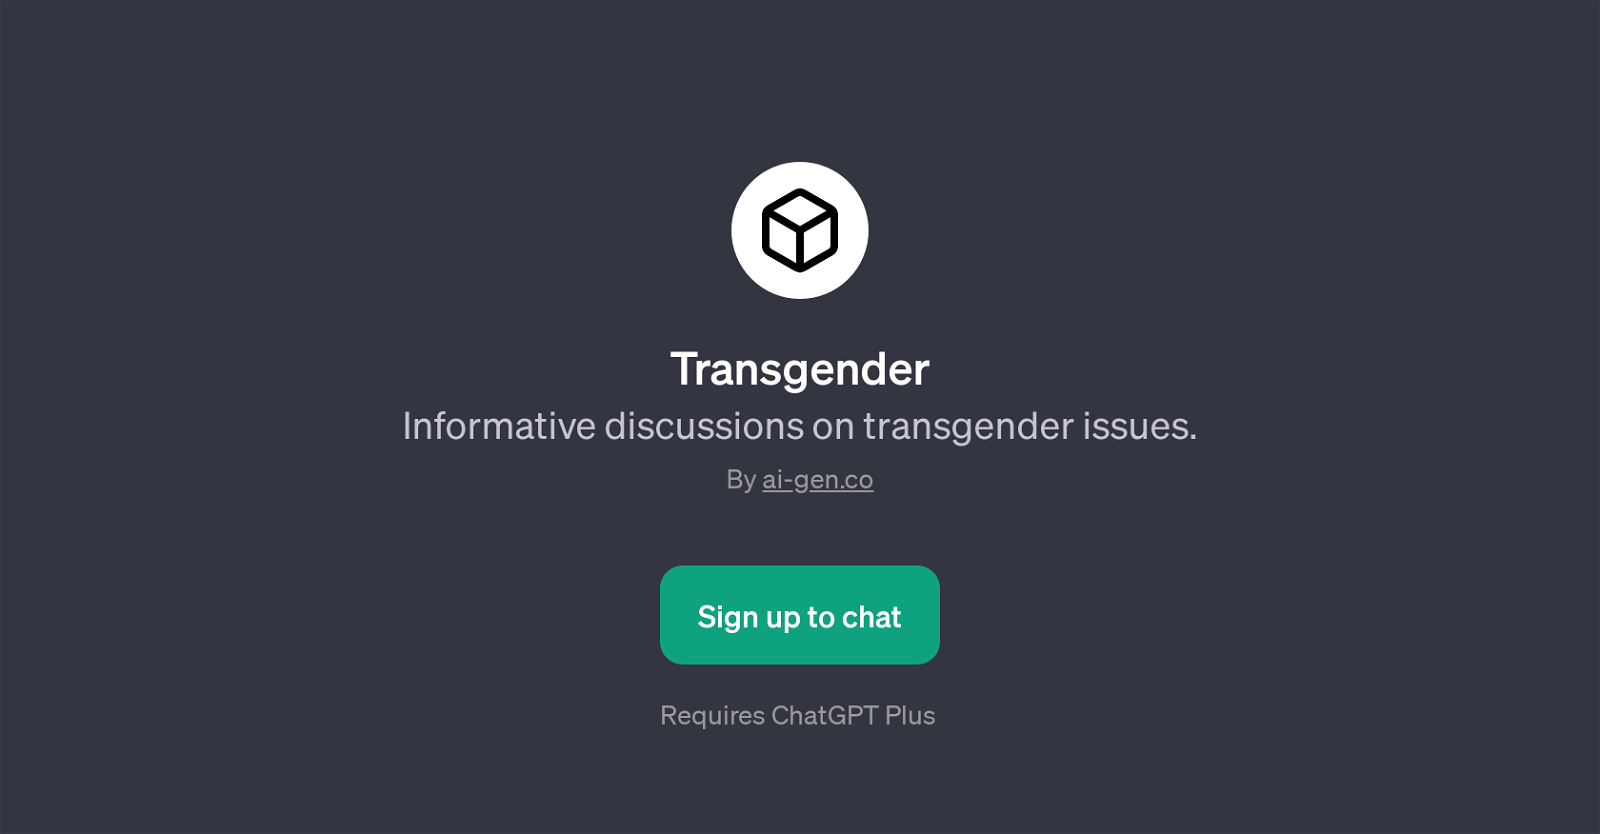 TransgenderPage website